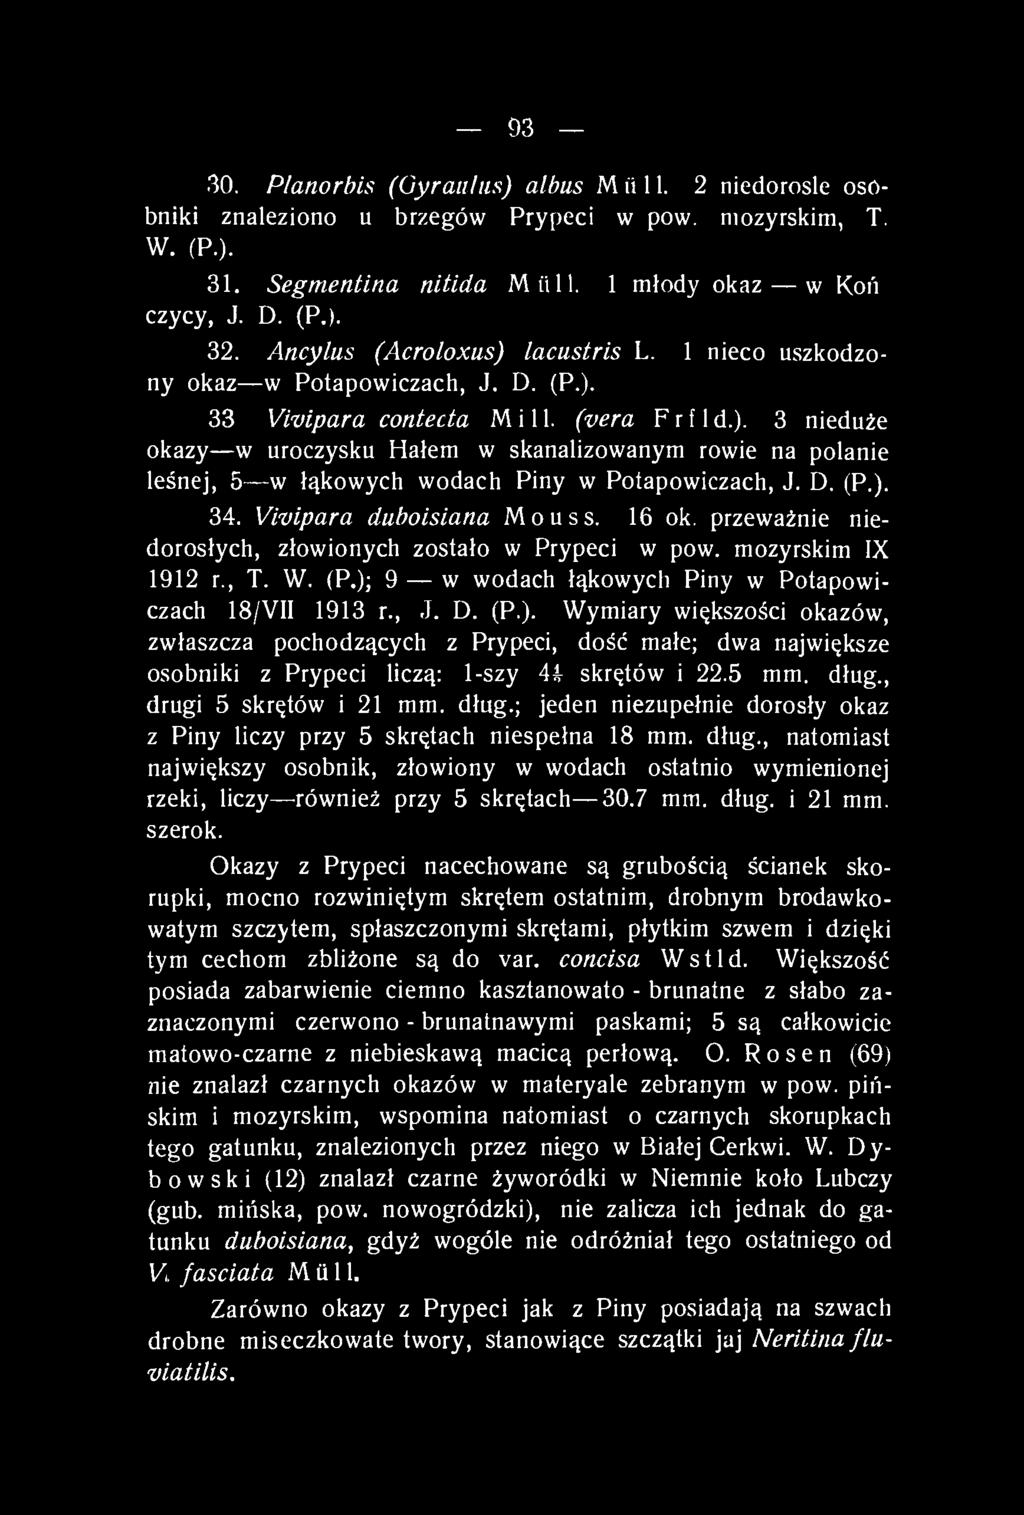 D. (P.). 34. Vivípara duboisiana Mouss. 16 ok. przeważnie niedorosłych, złowionych zostało w Prypeci w pow. mozyrskim IX 1912 r., T. W. (P.); 9 w wodach łąkowych Piny w Potapowiczach 18/VII 1913 r.